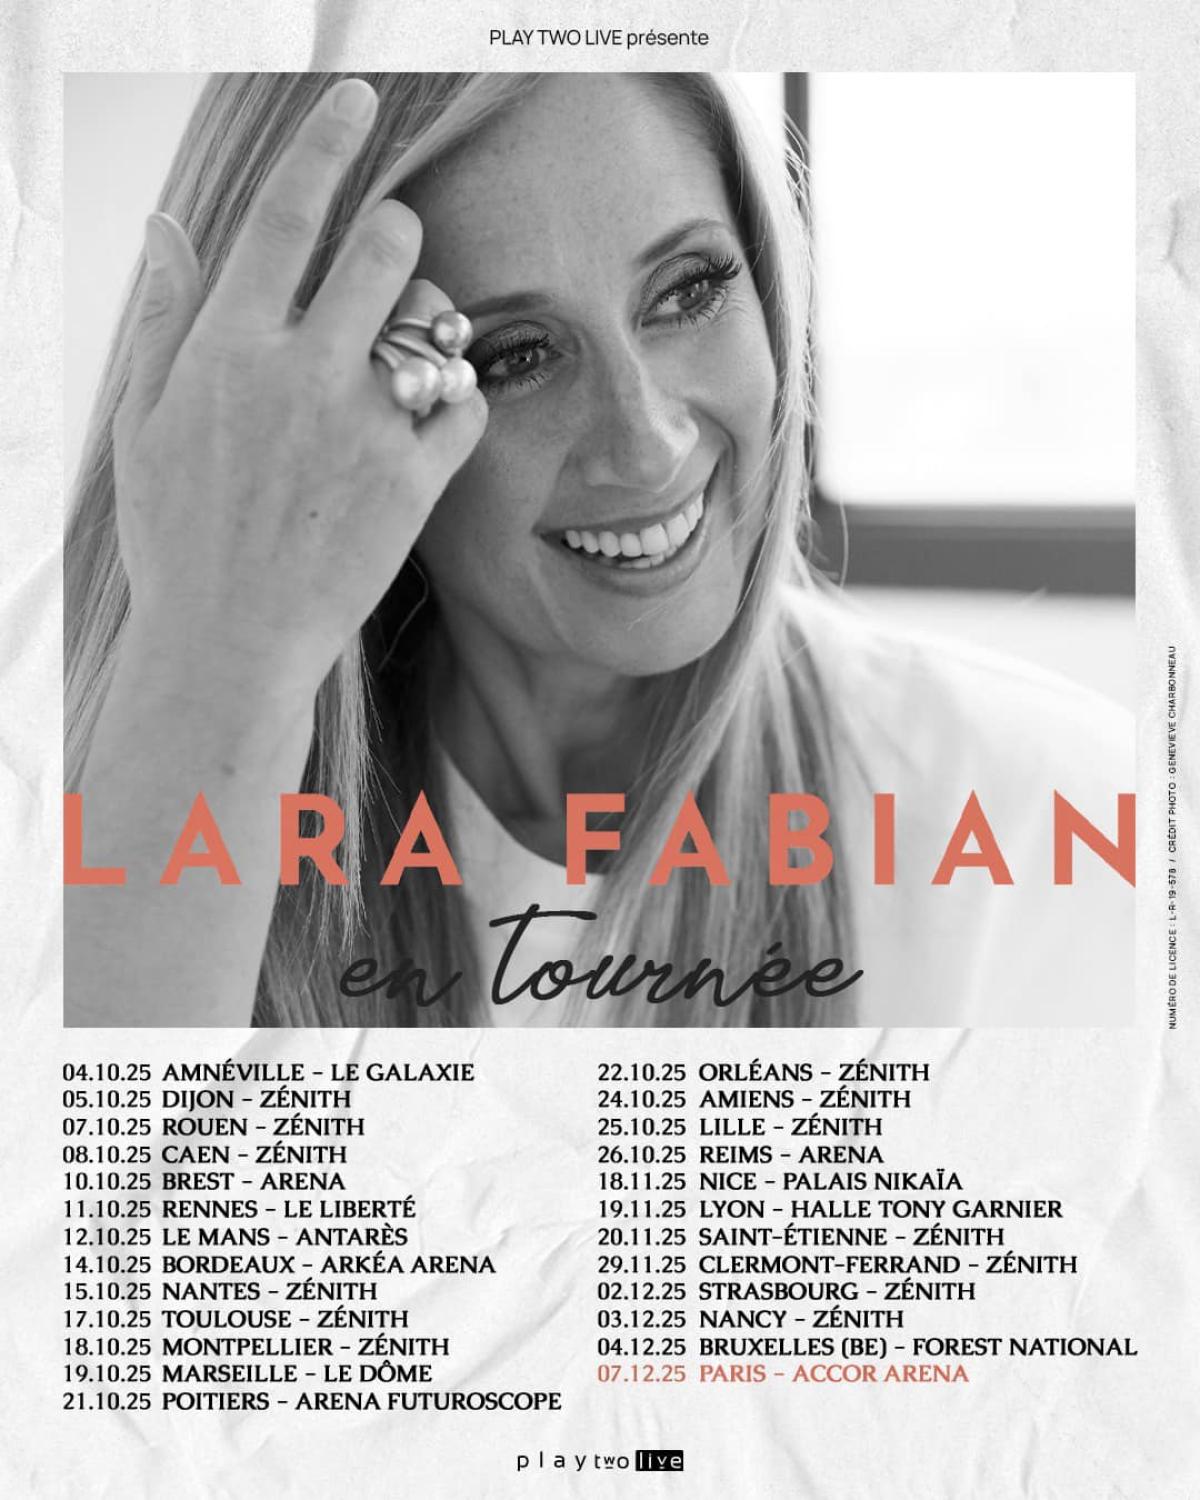 Lara Fabian at Zenith Rouen Tickets